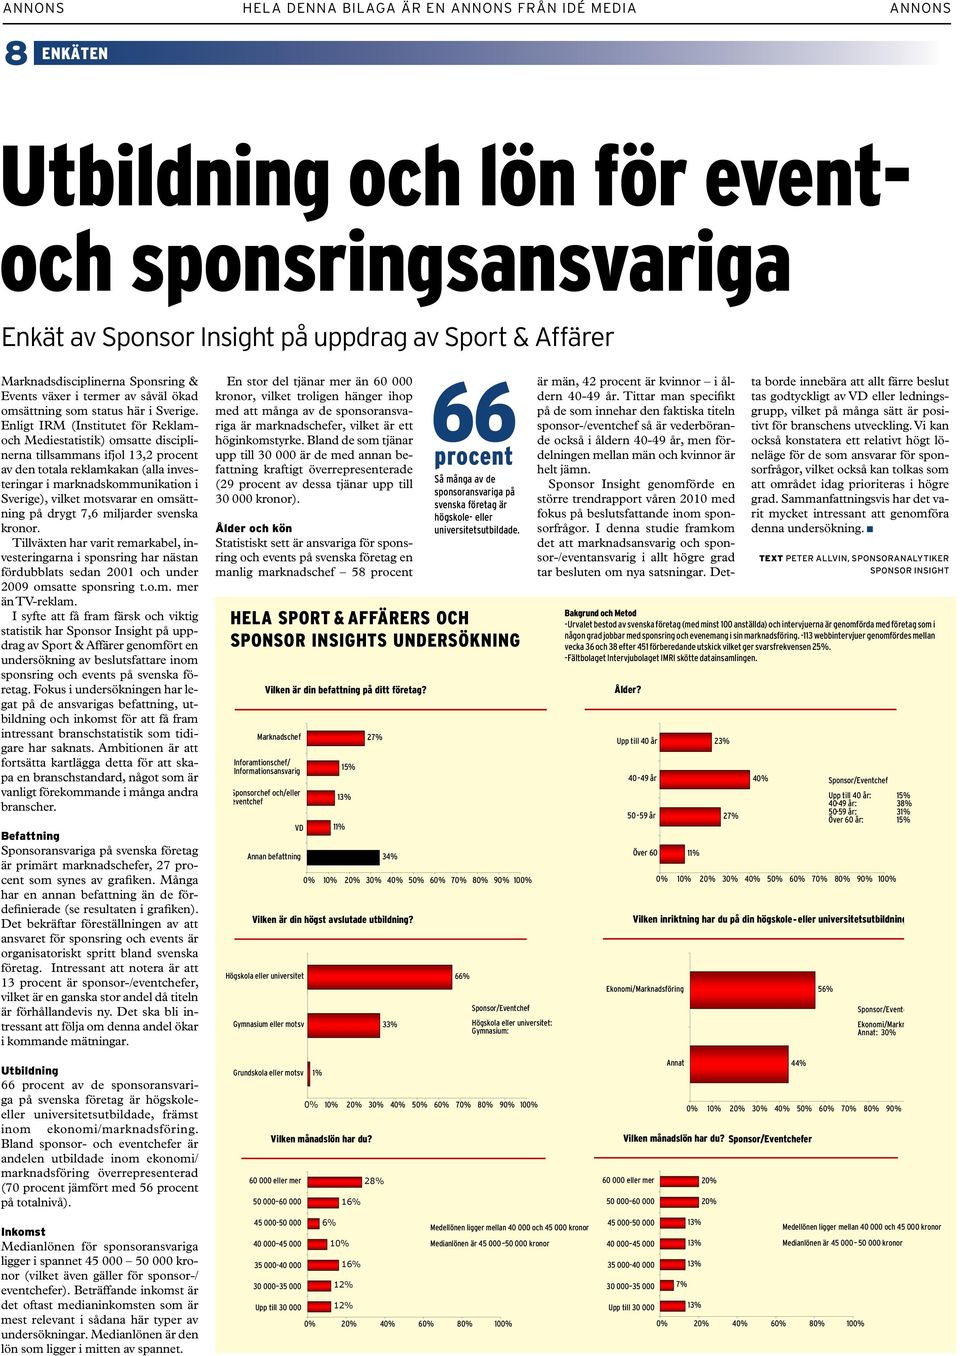 Enligt IRM (Institutet för Reklamoch Mediestatistik) omsatte disciplinerna tillsammans ifjol 13,2 procent av den totala reklamkakan (alla investeringar i marknadskommunikation i Sverige), vilket